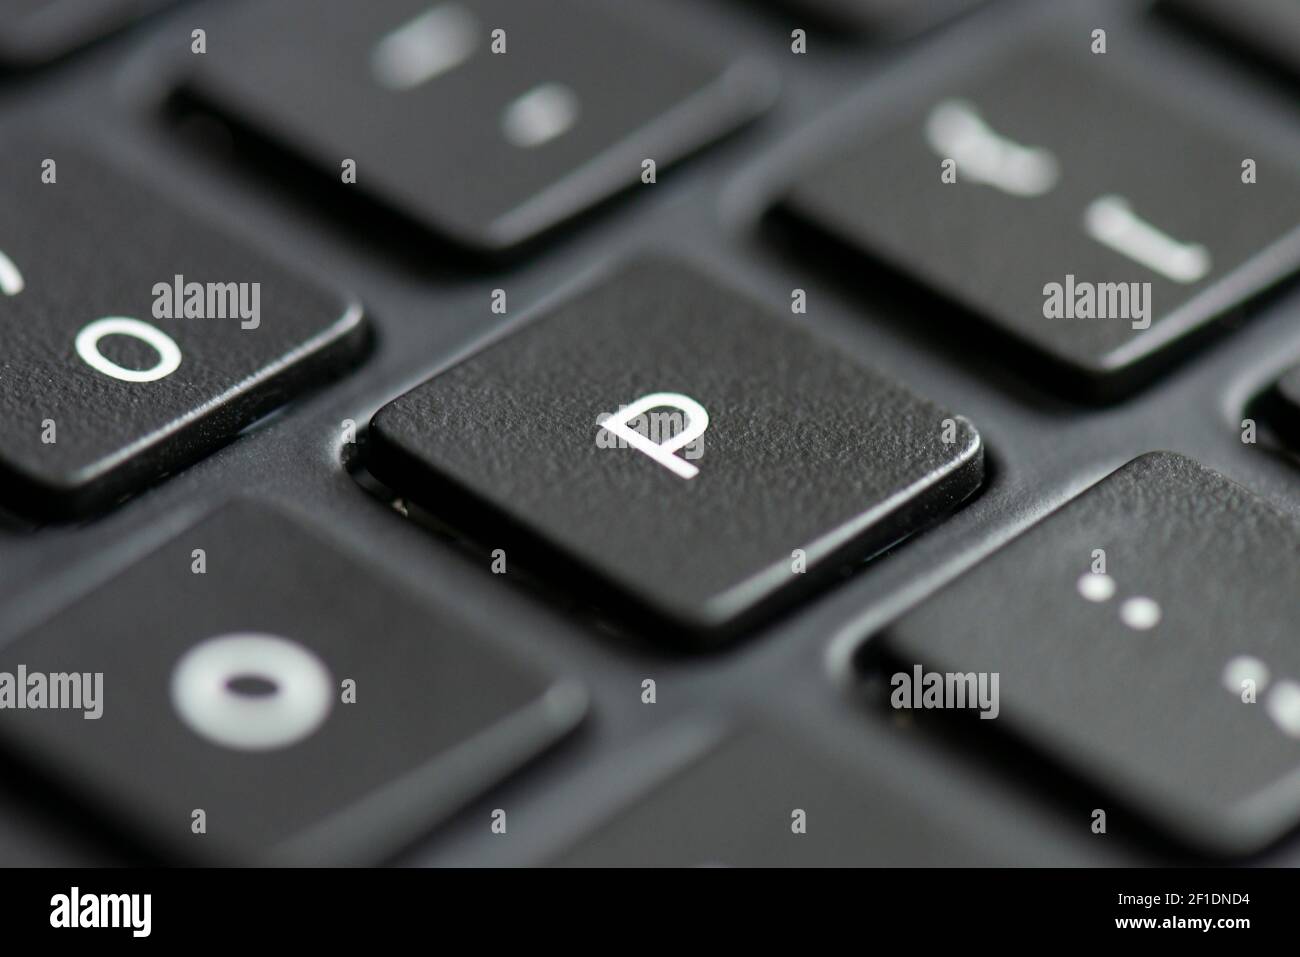 Letter P key on a laptop keyboard Stock Photo - Alamy